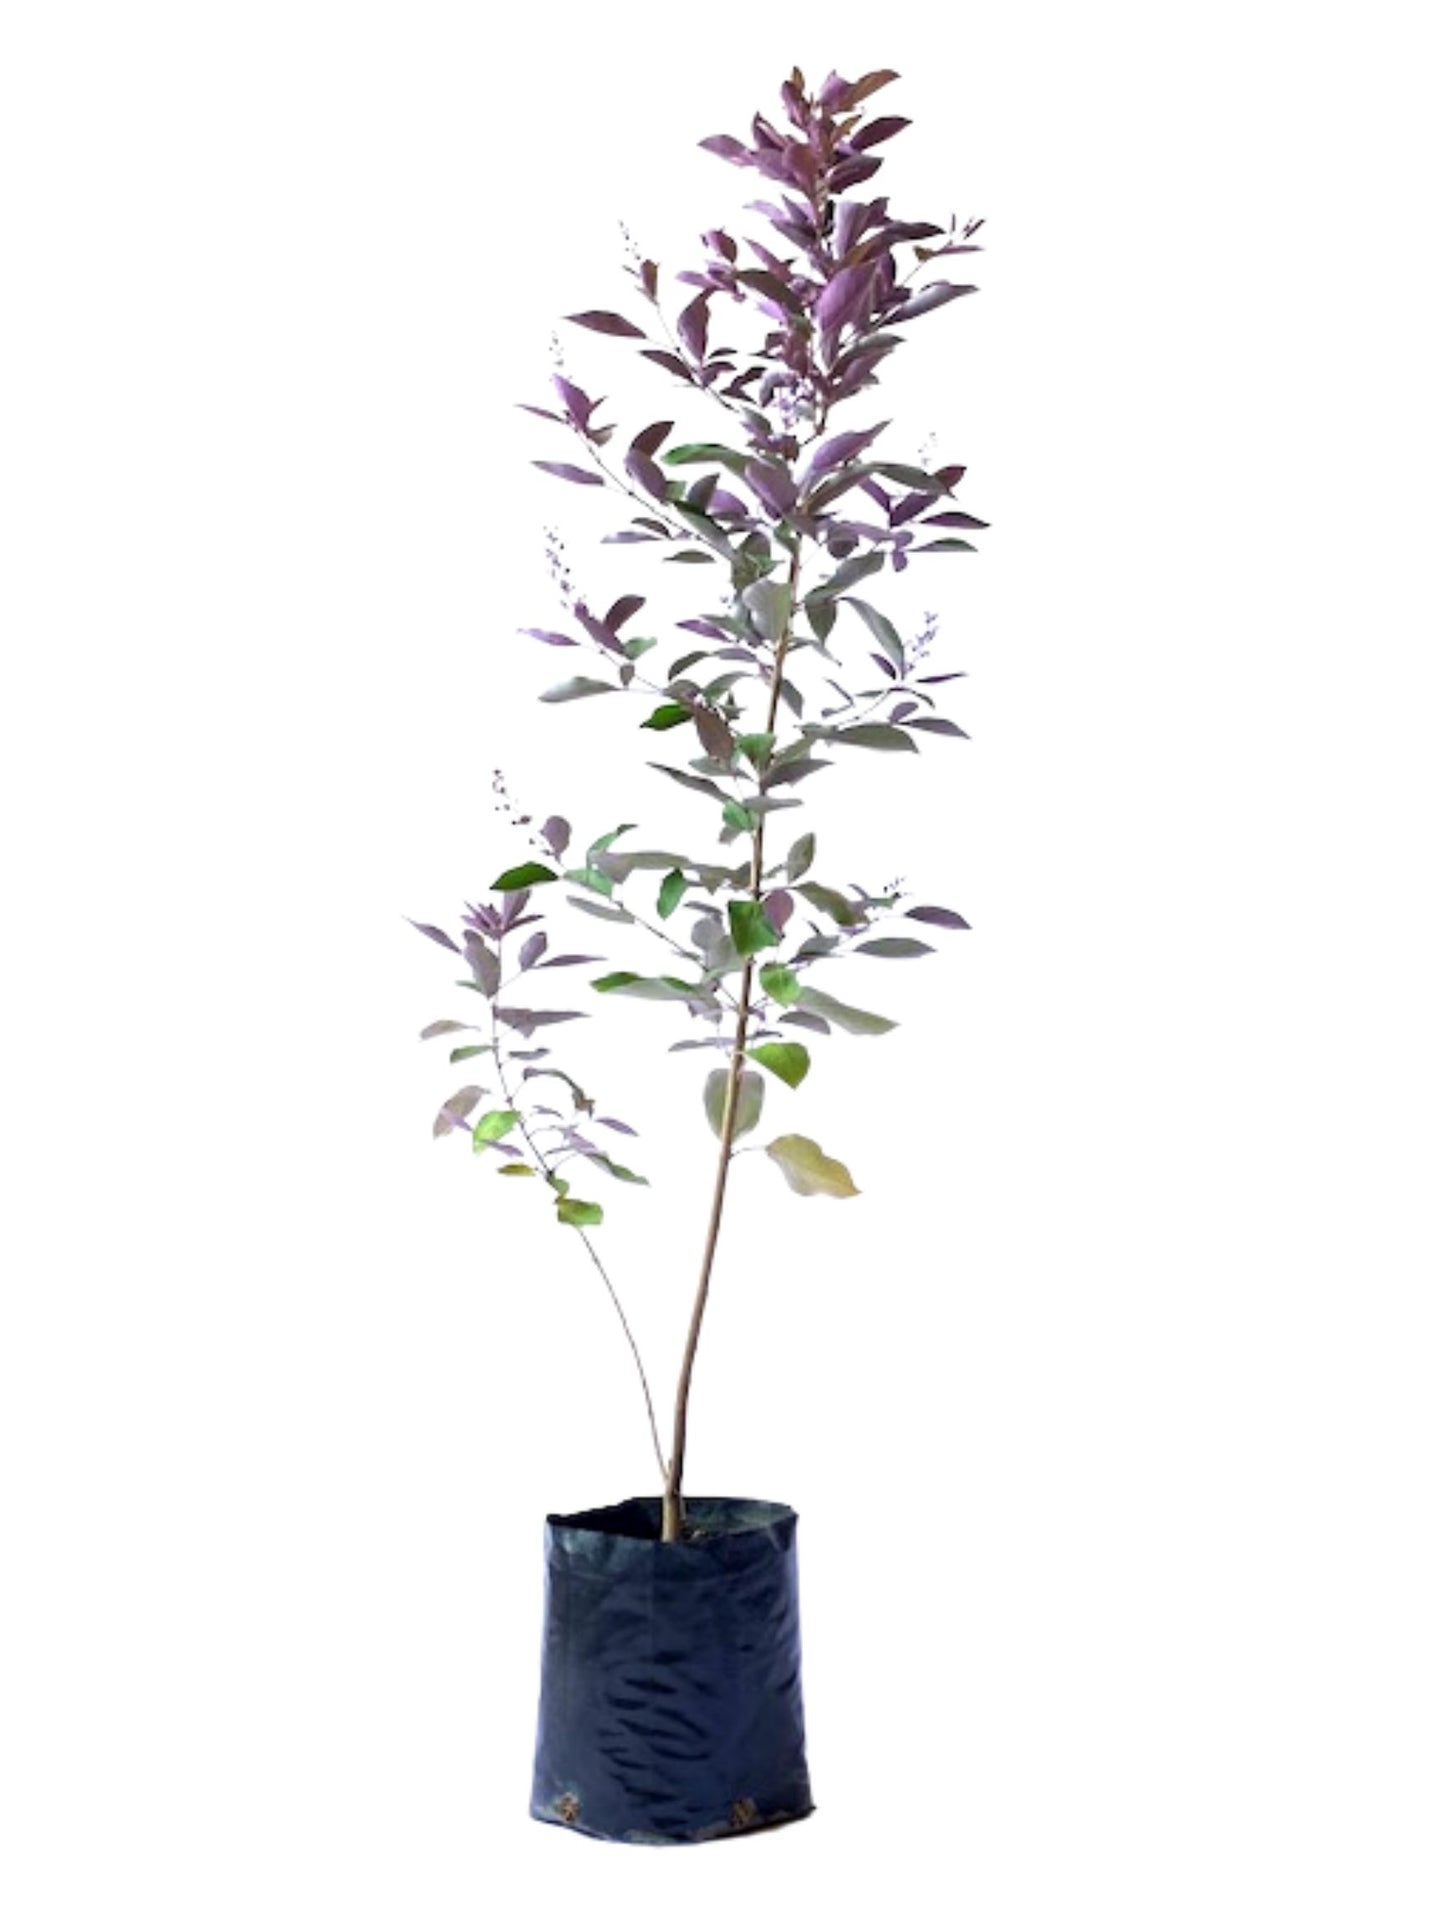 Vitex trifolia var. purpurea